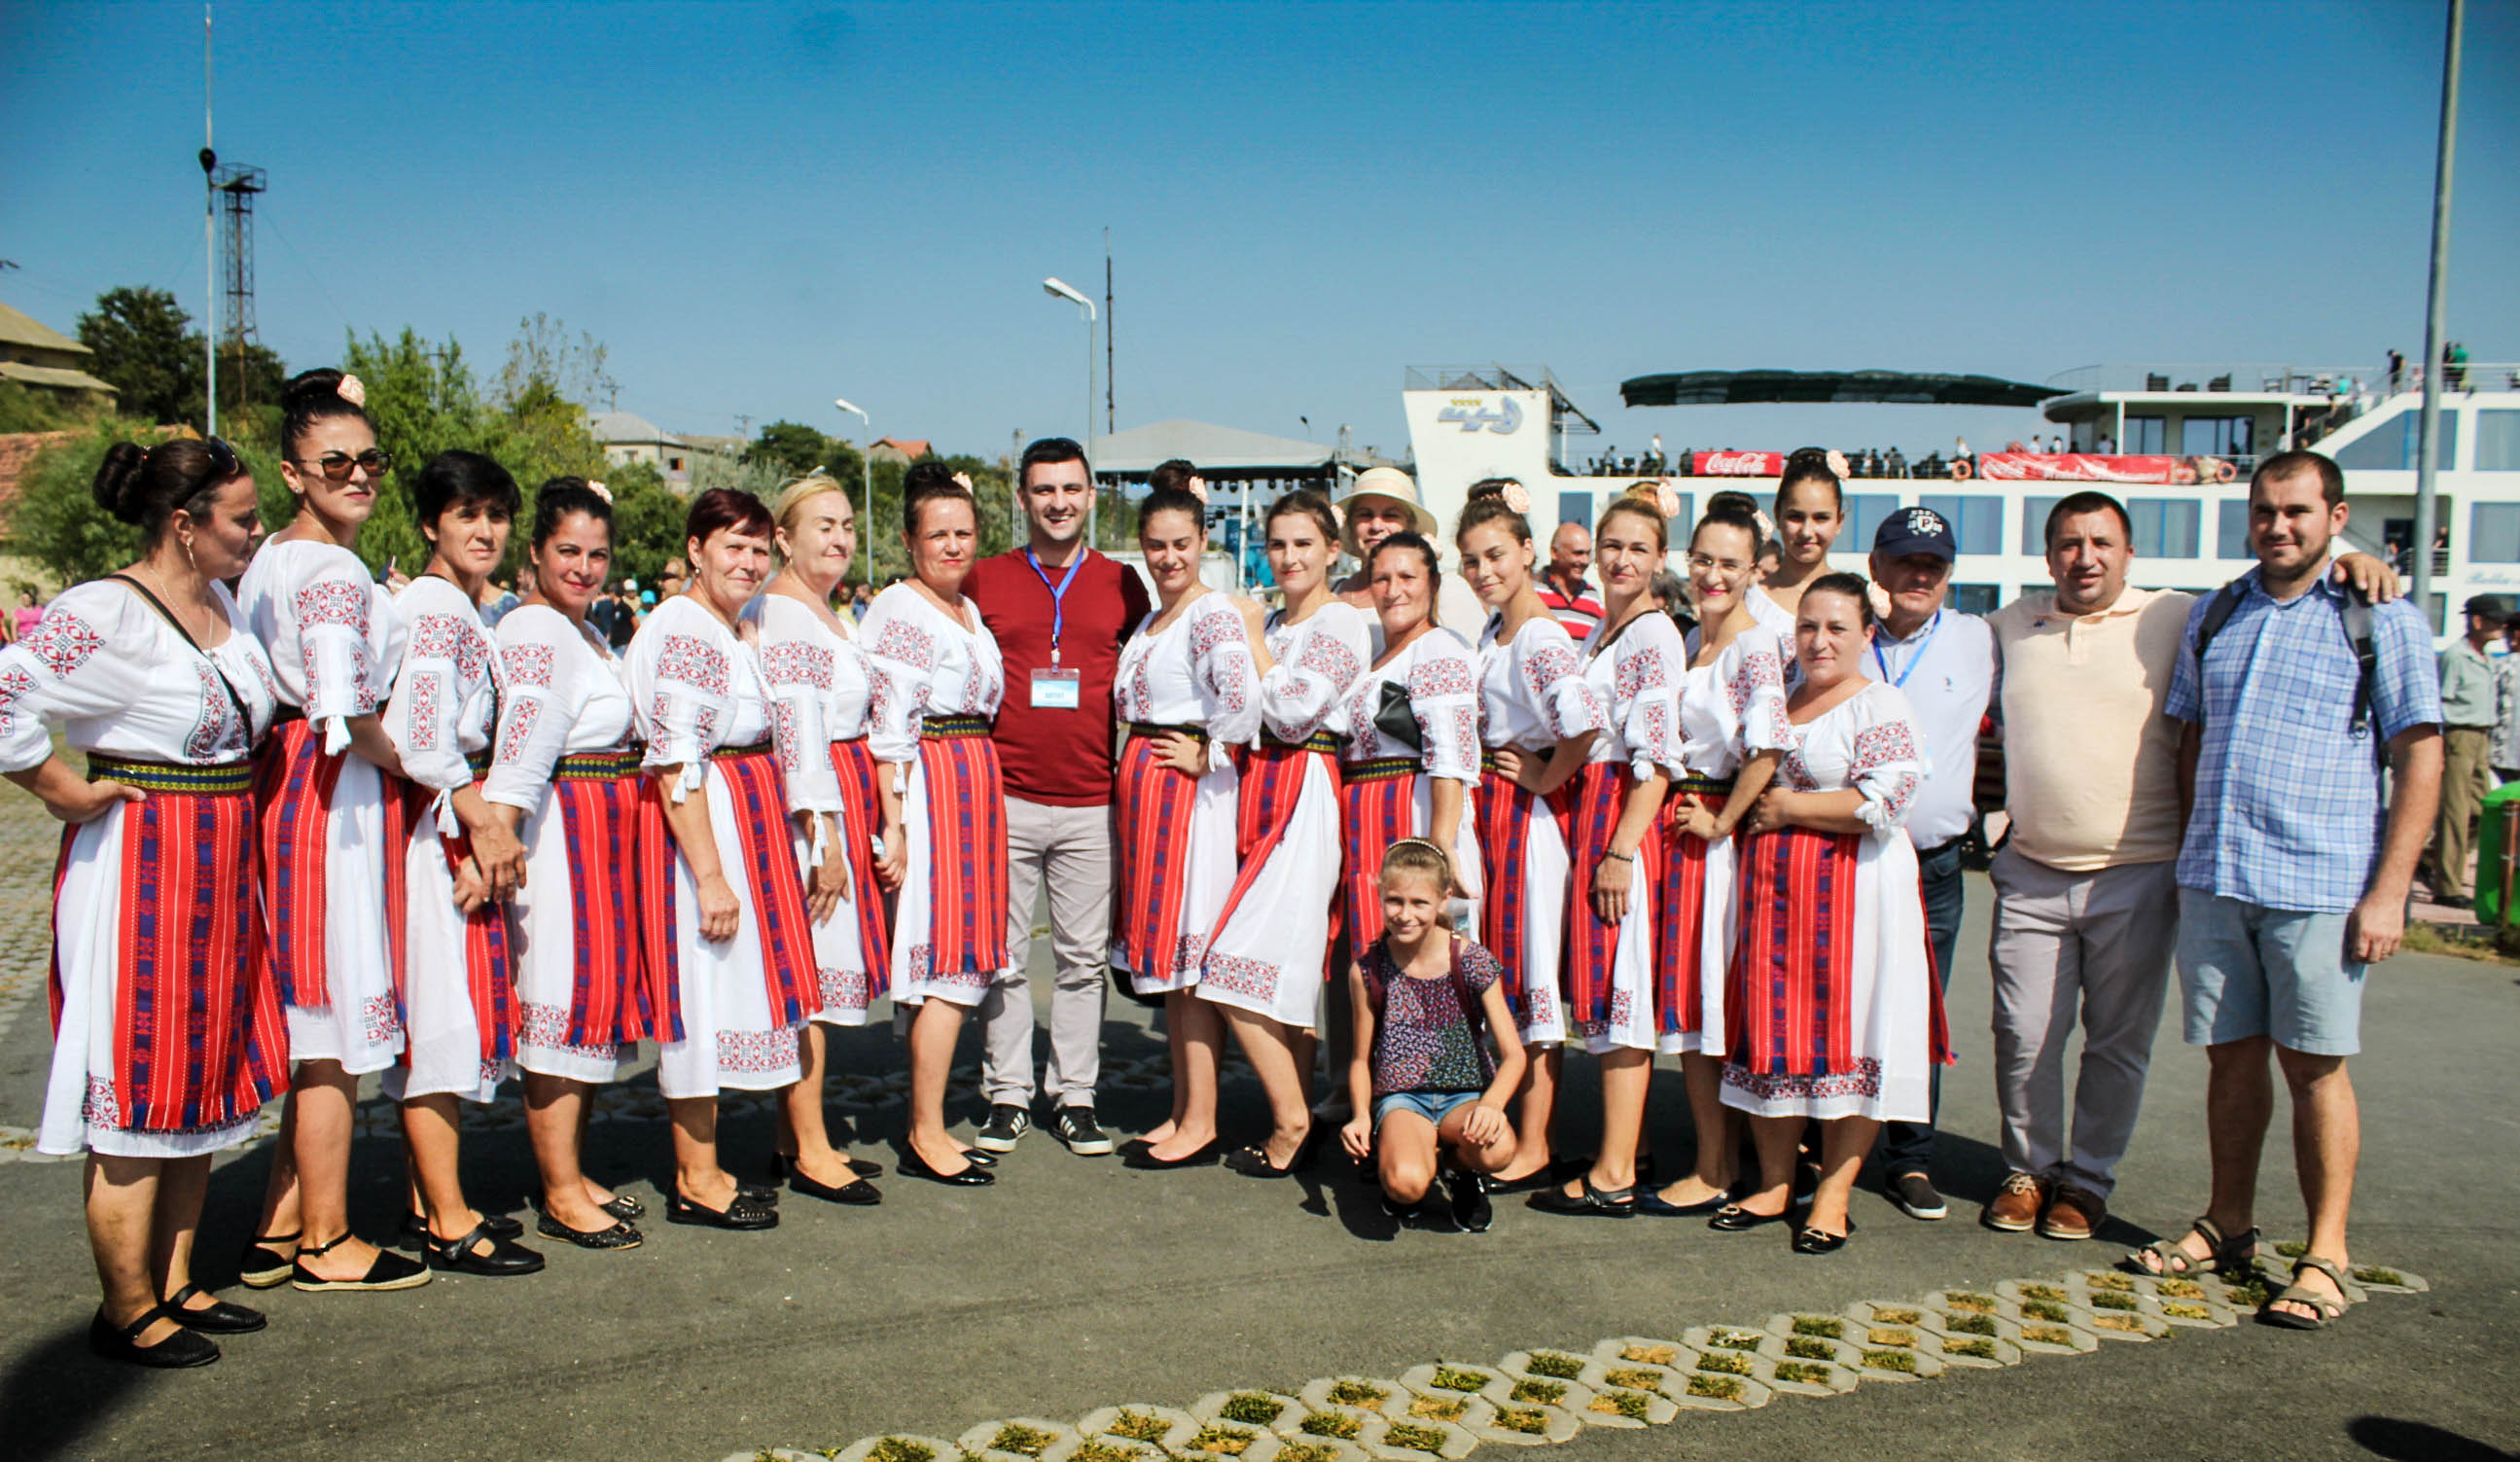 Prima ediție a Festivalului Borșului Lipovenesc de Jurilovca,o reușită incontestabilă a organizatorilor!